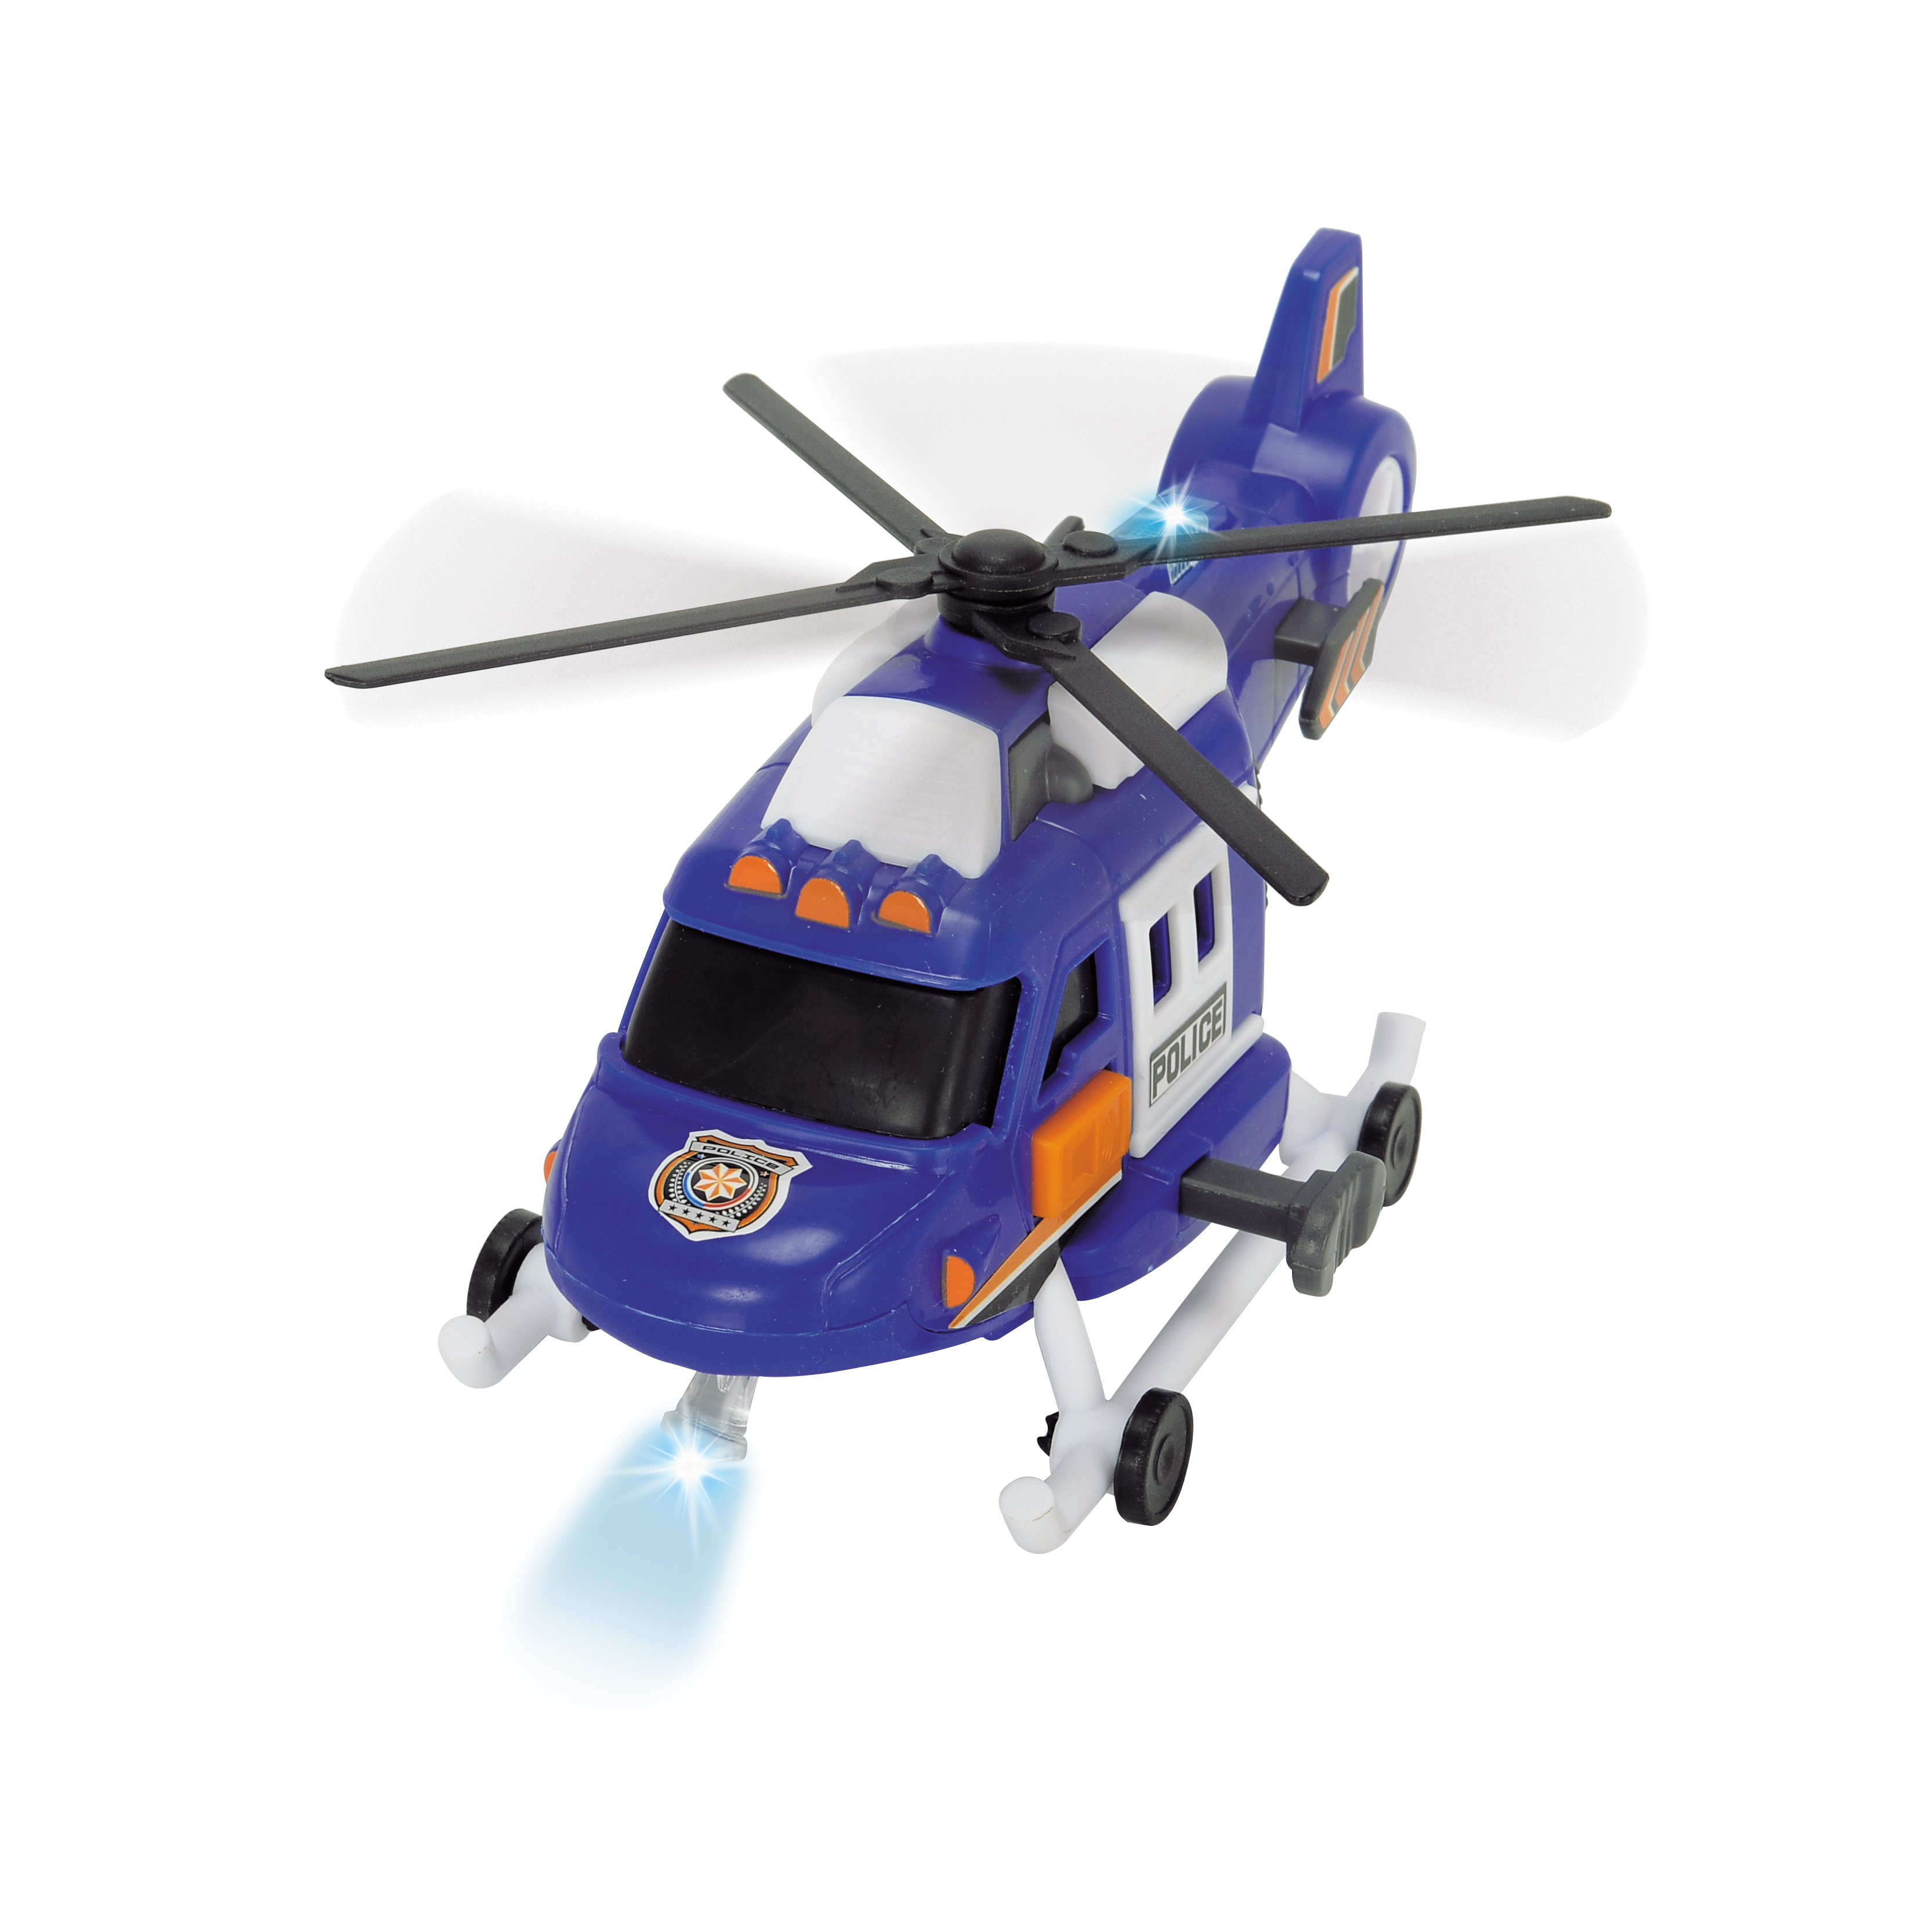 Đồ Chơi Trực Thăng DICKIE TOYS Helicopter 203302016 - Đồ Chơi Đức Chính Hãng (18 cm)